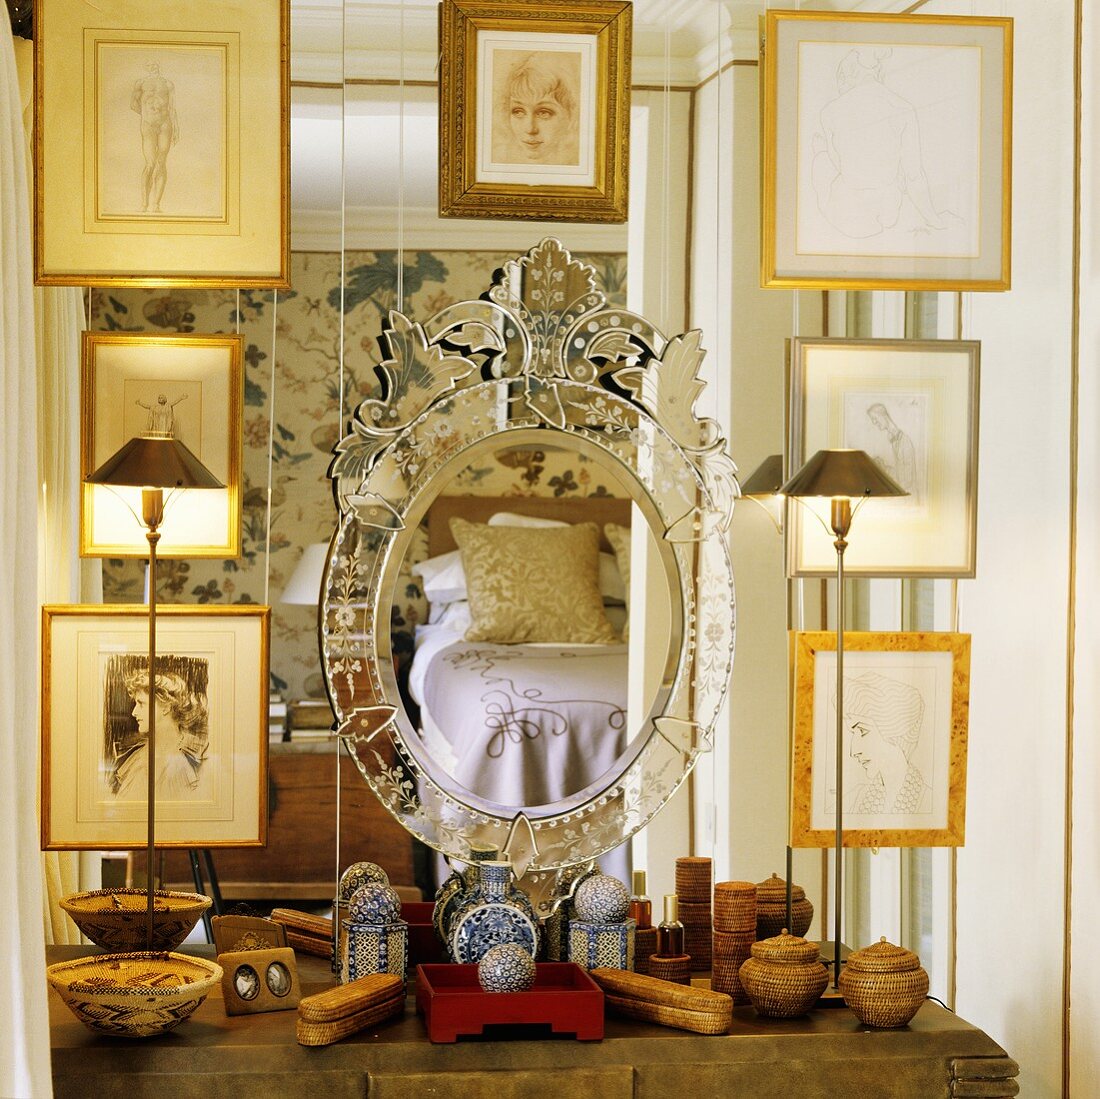 Bildersammlung mit Goldrahmen vor Spiegel und verschiedene Behälter auf Ablage